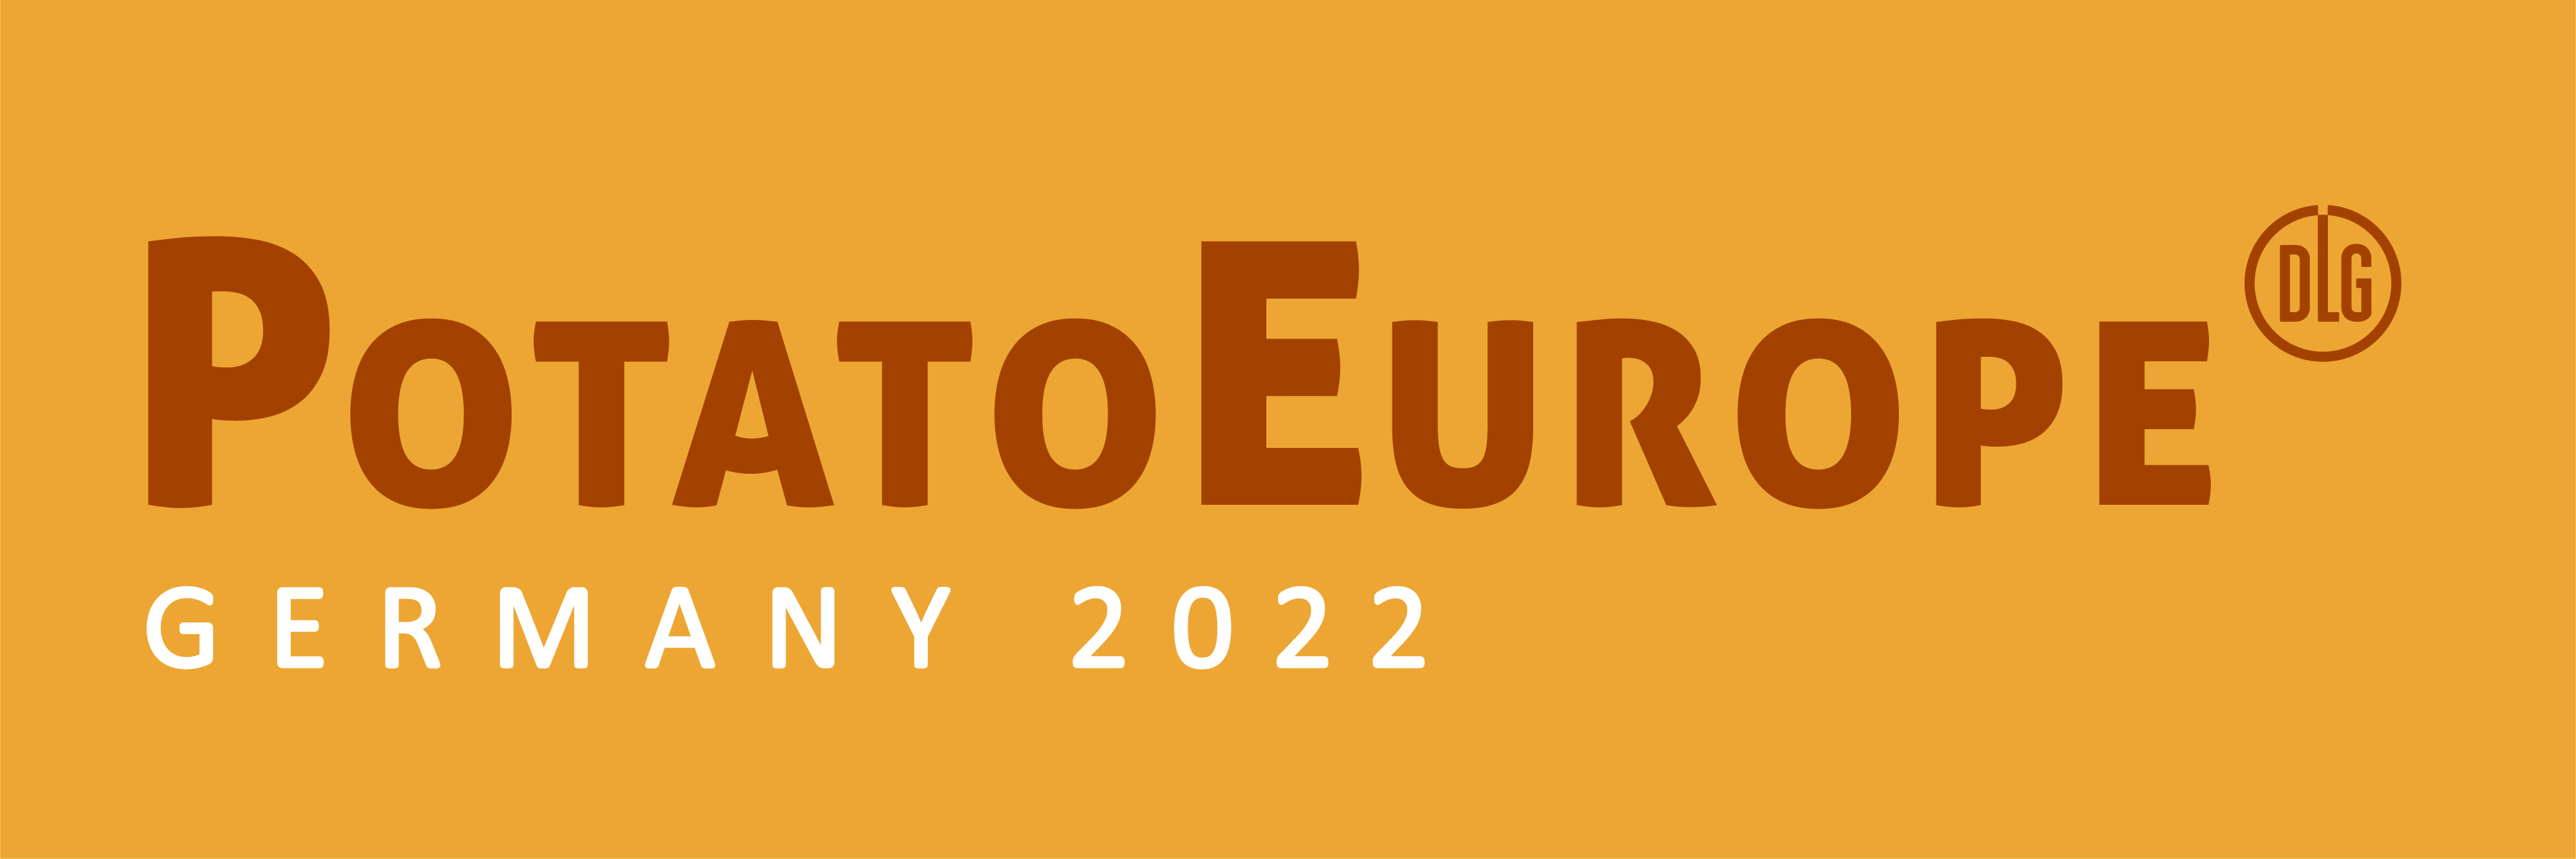 Potato Europe 2022